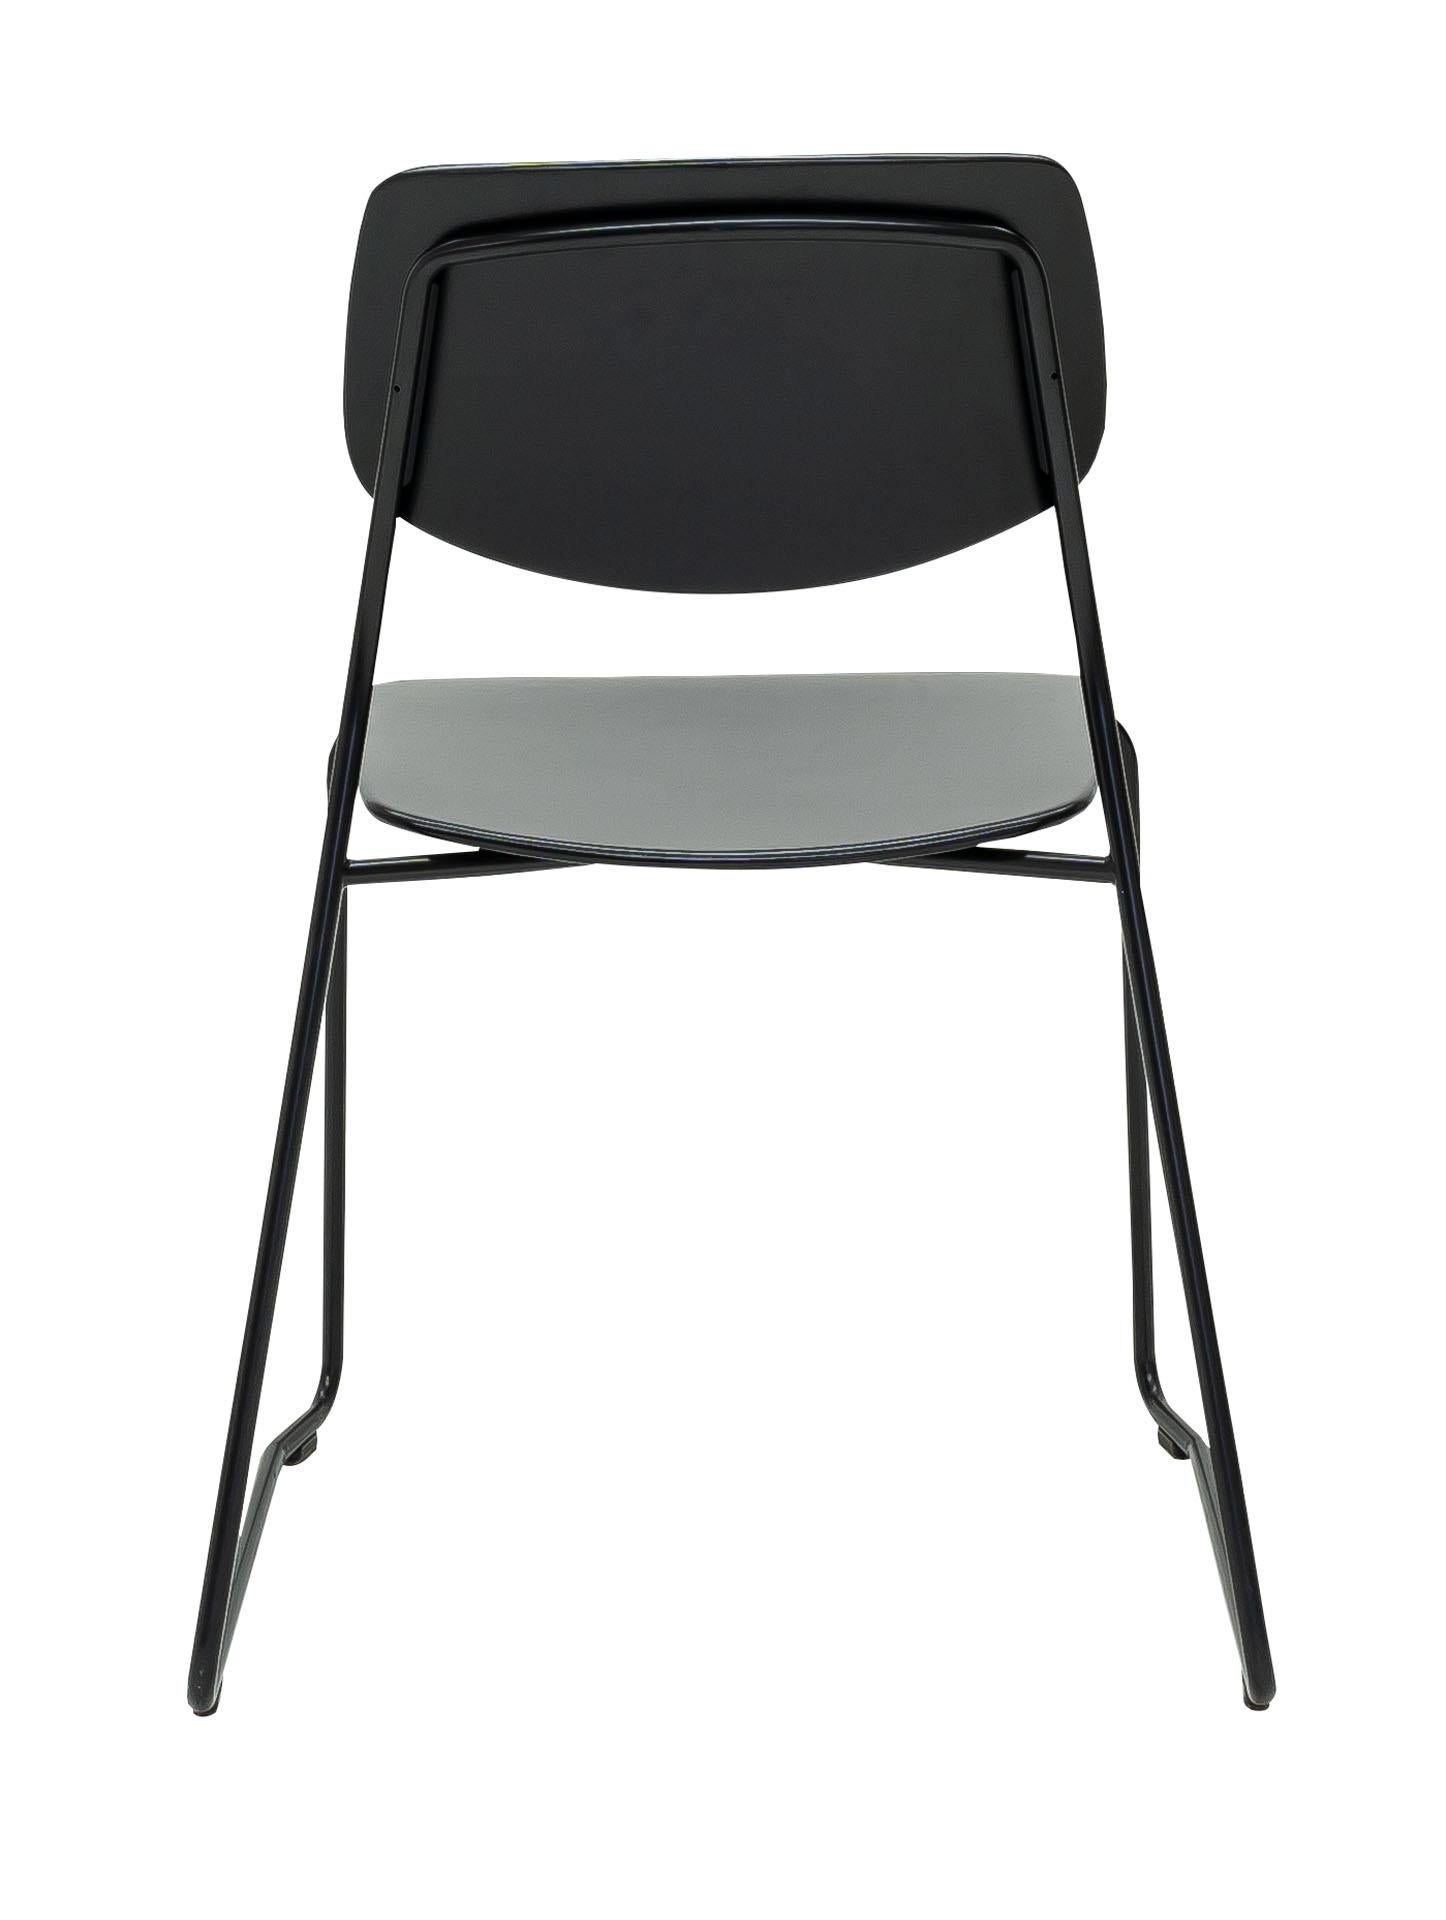 Dietiker Felber C14 Sled Modern Dining Chair, Modular Design, Set of 2 In New Condition For Sale In Stein am Rhein, CH